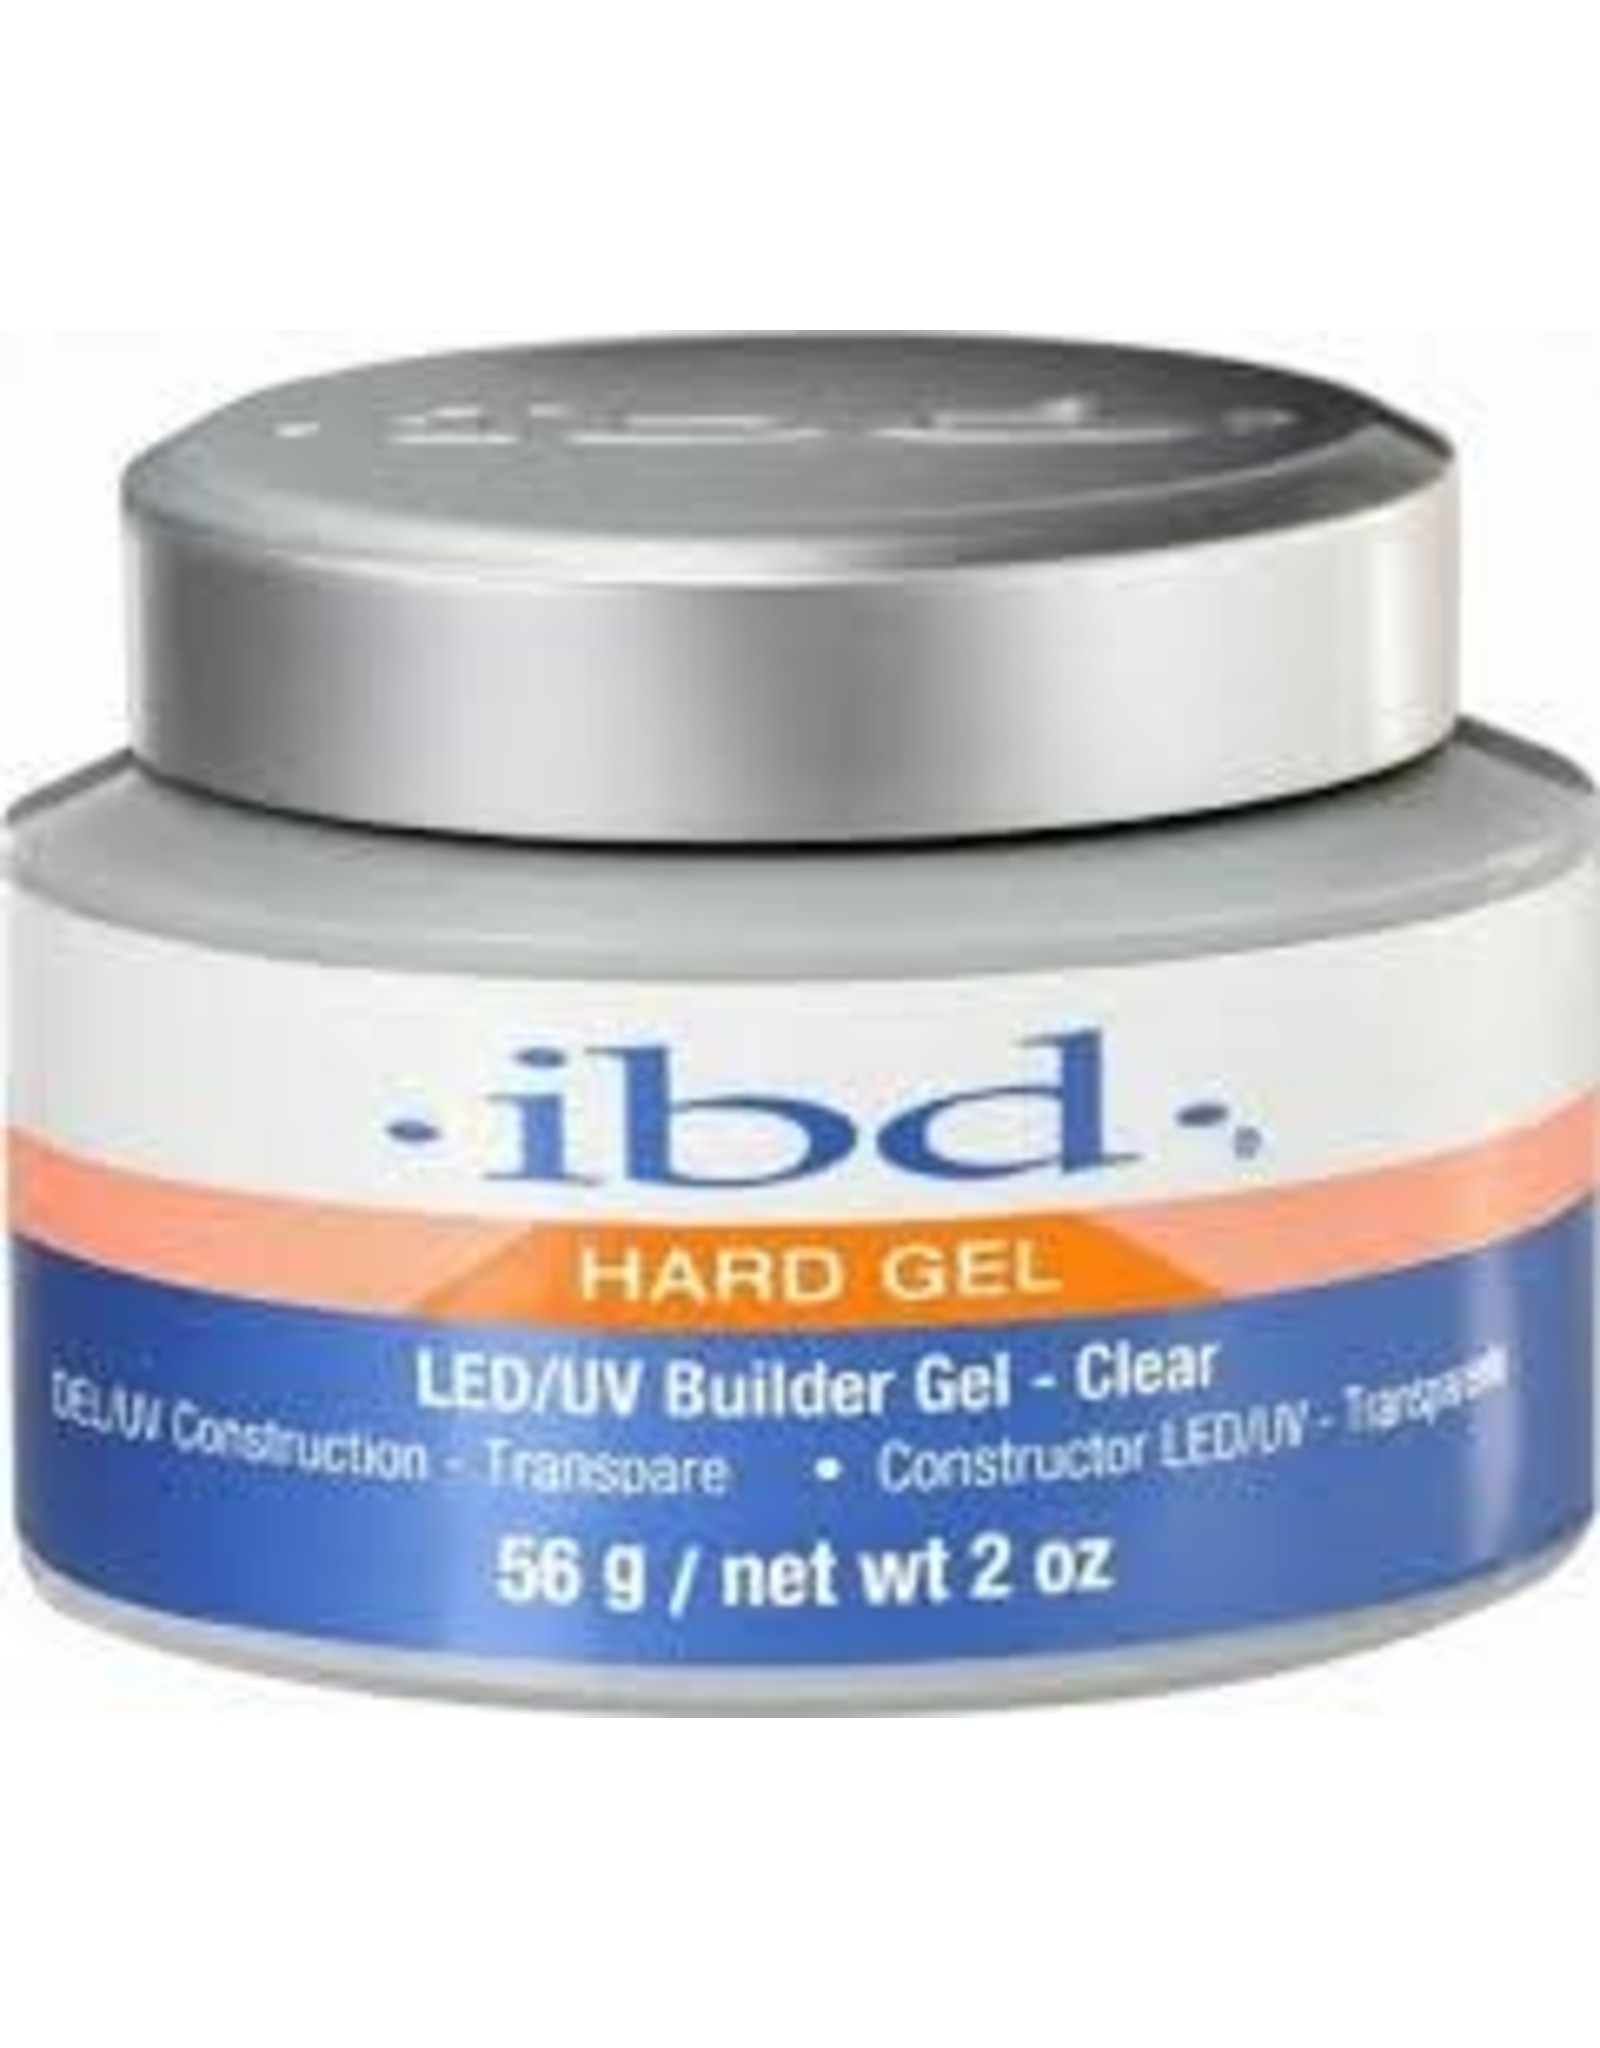 IBD IBD LED/UV BUILDER GEL CLEAR #61178